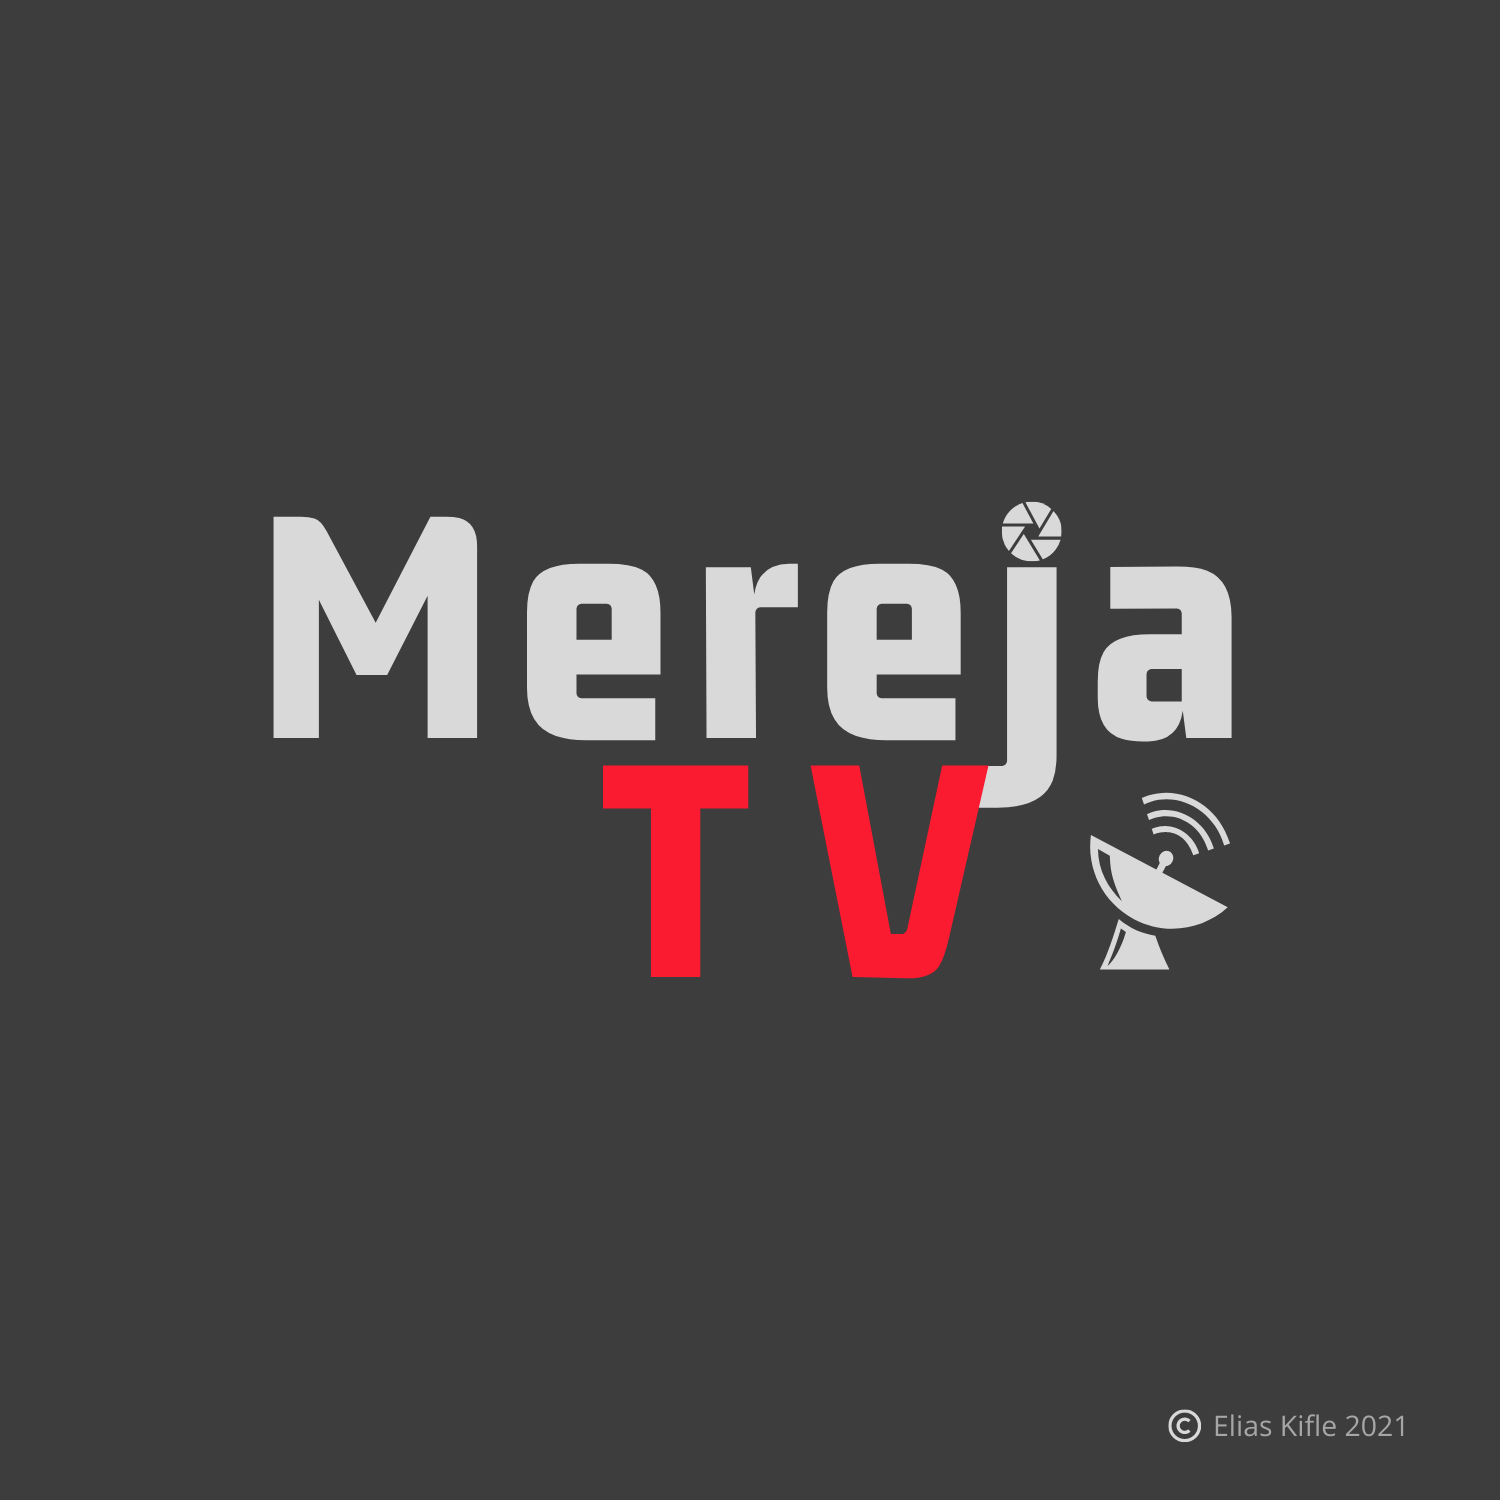 Mereja TV logo